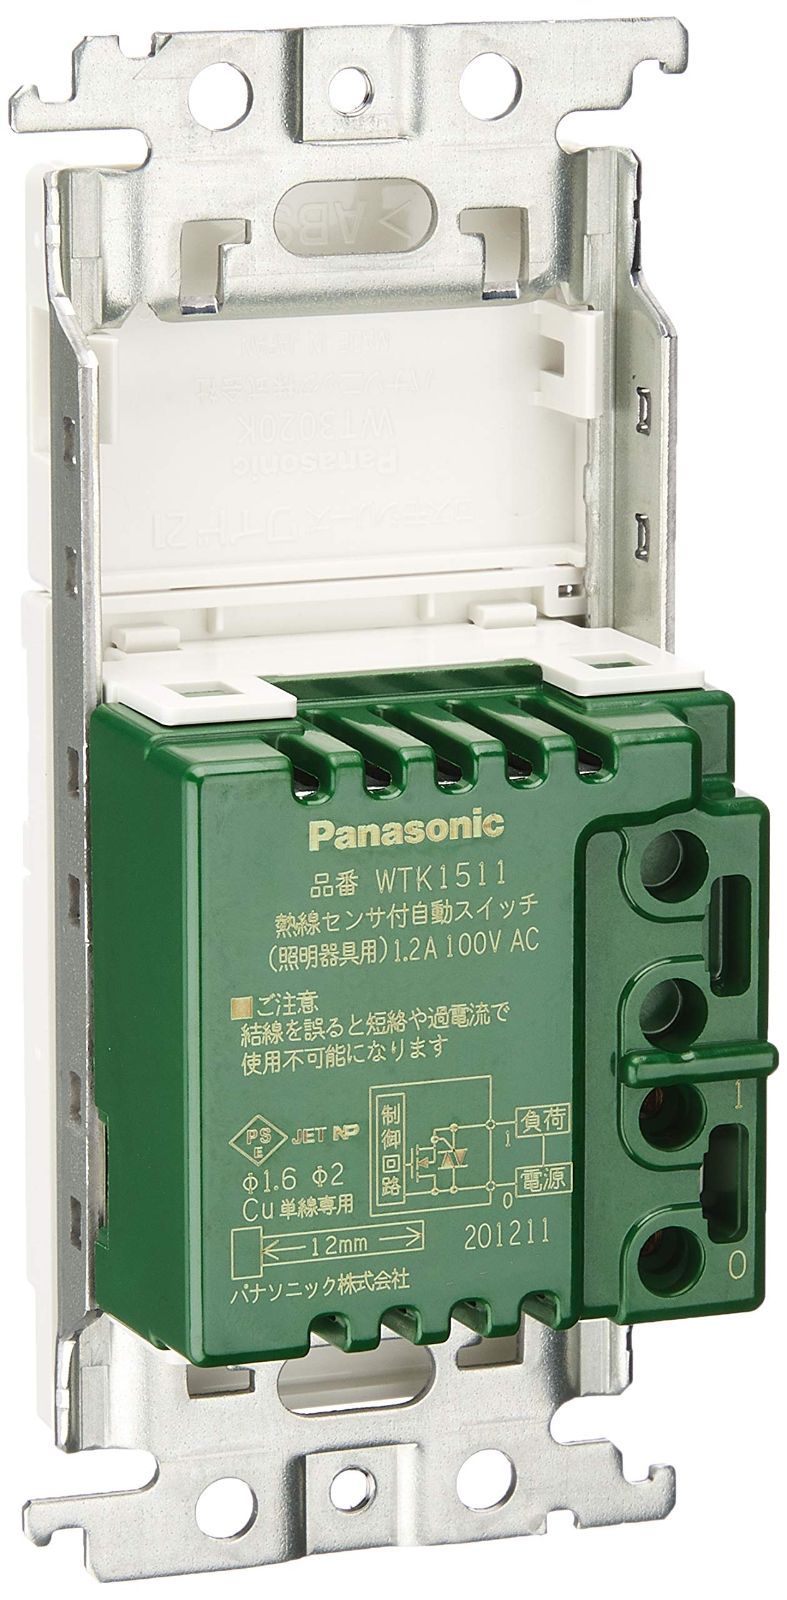 パナソニック WTK12749W コスモシリーズワイド21 壁取付熱線センサ付自動 - 3